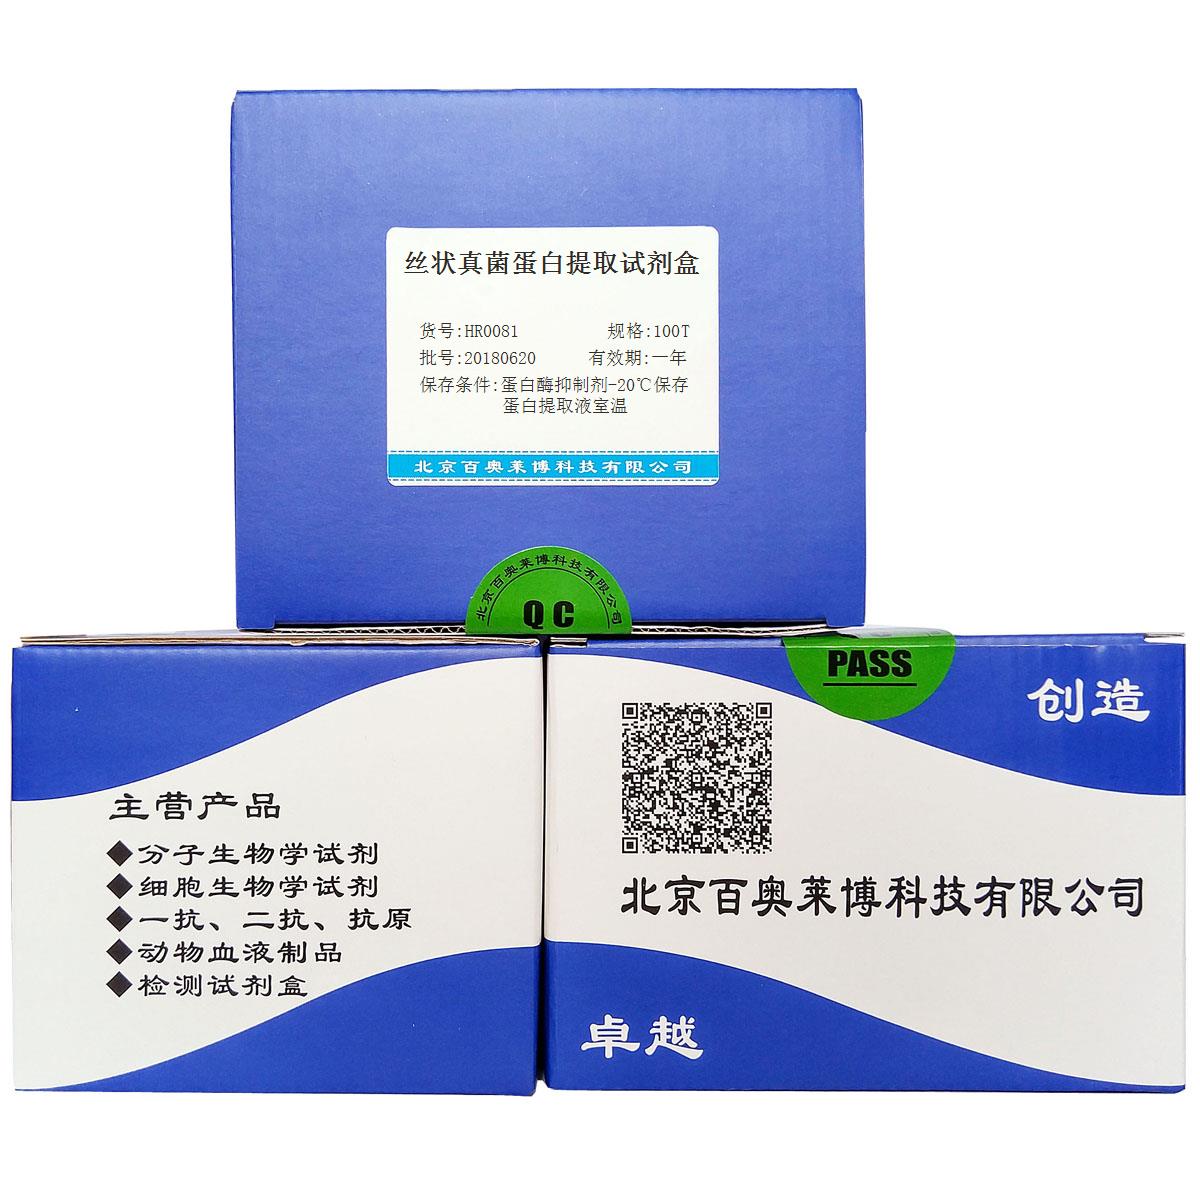 北京现货丝状真菌蛋白提取试剂盒折扣价